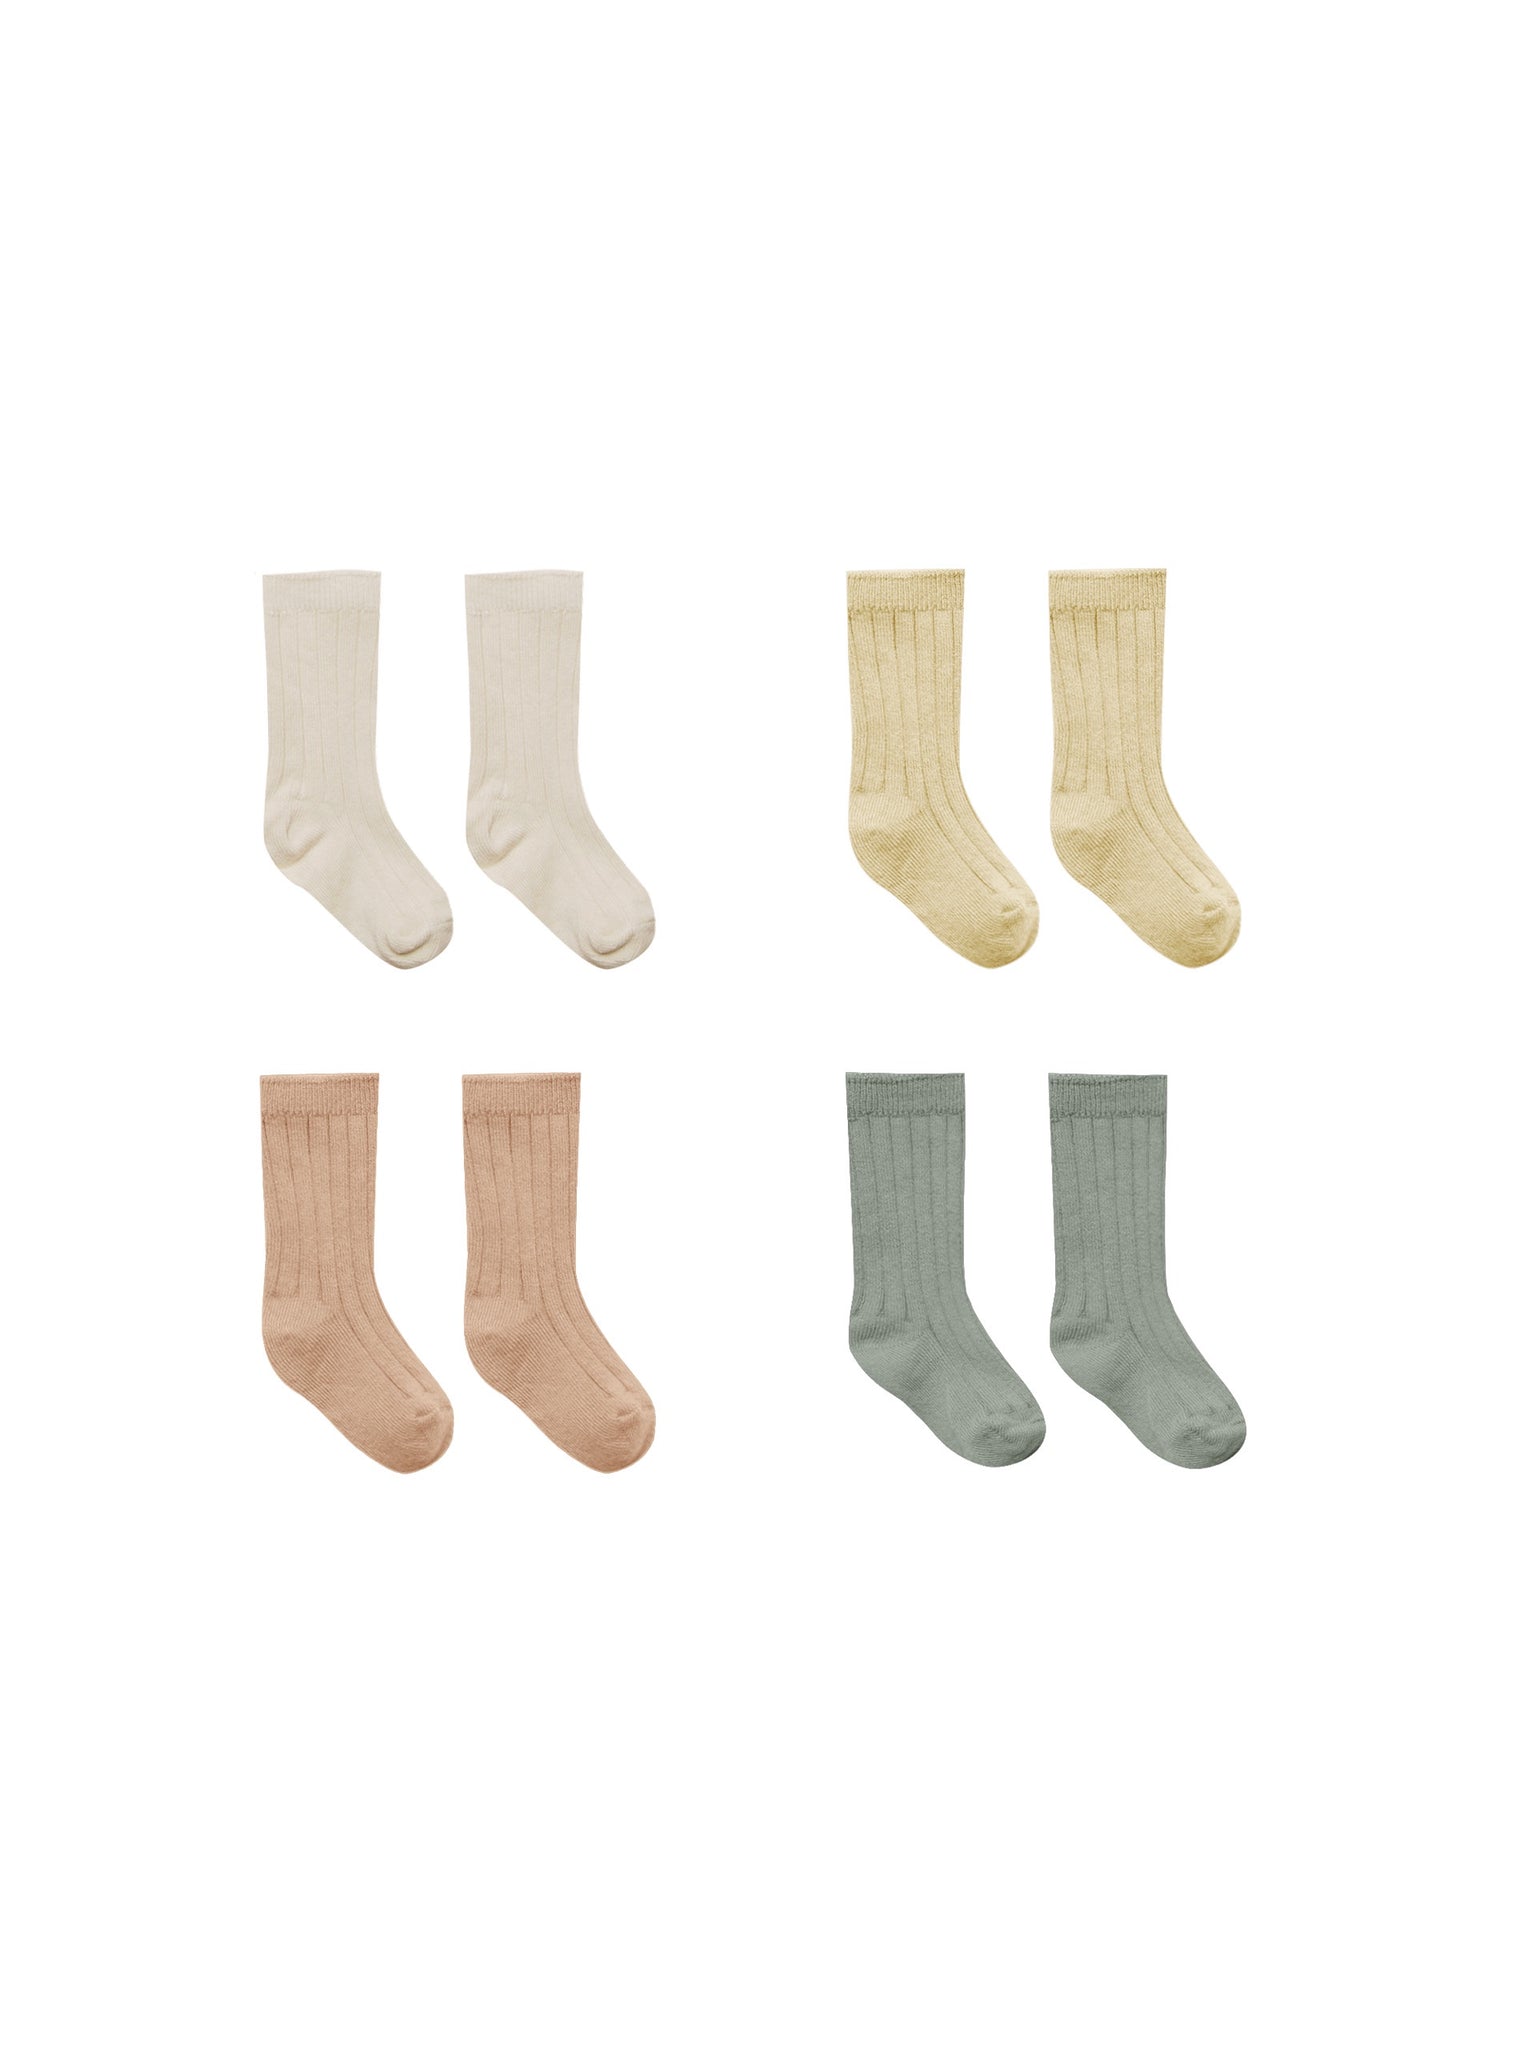 Quincy Mae Socks 4pk - Natural/Yellow/Apricot/Sea green